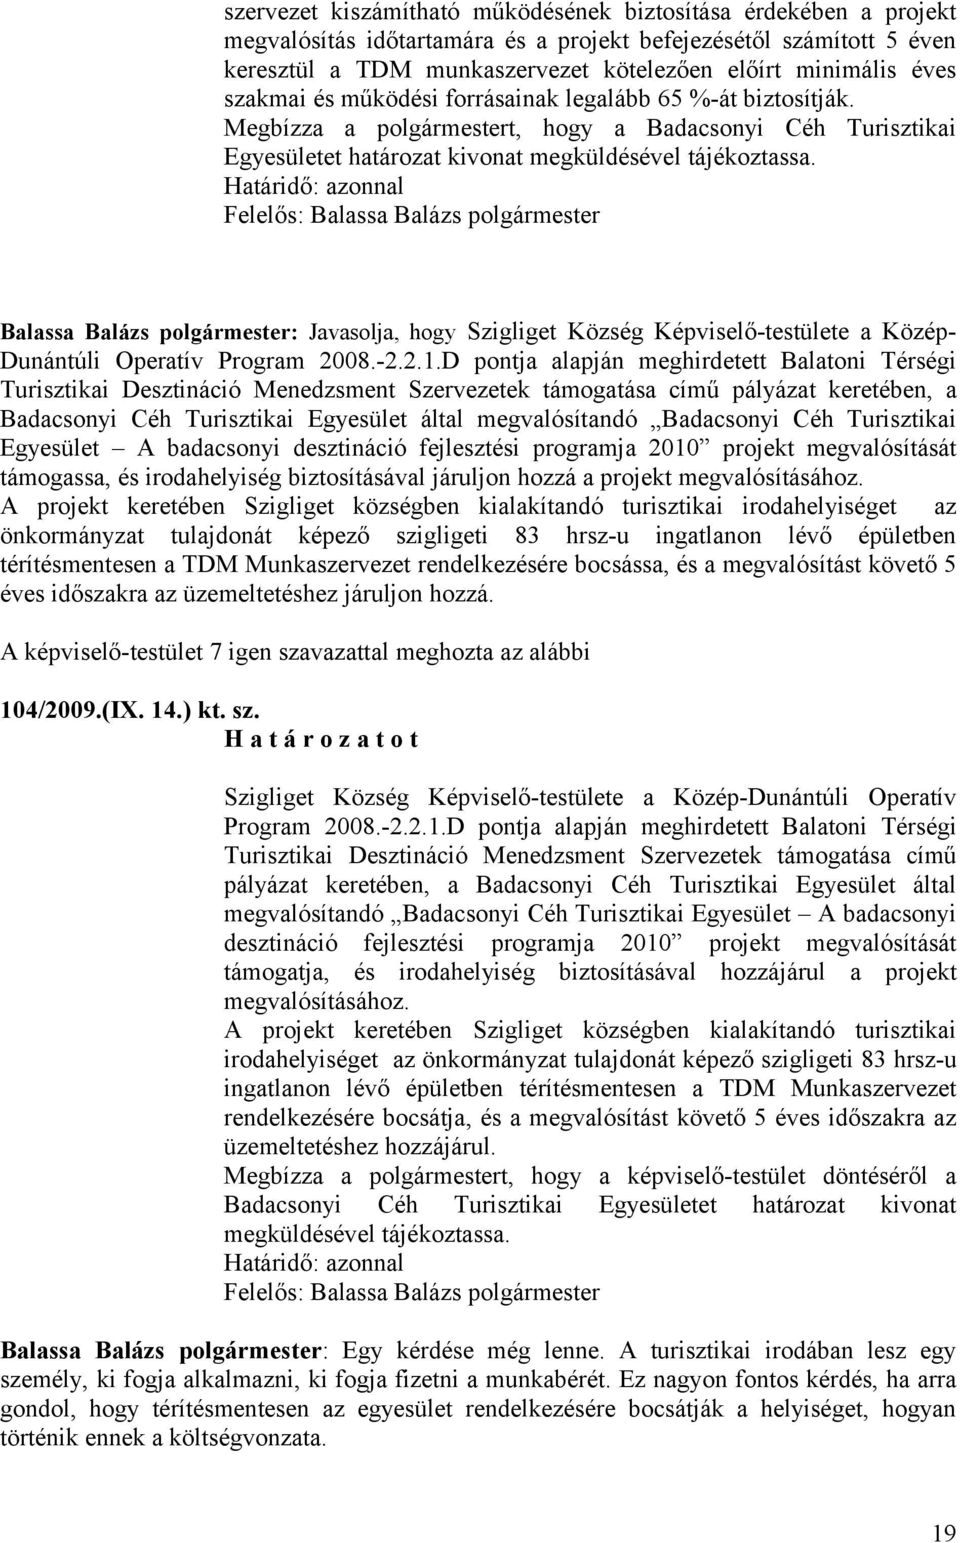 Határidő: azonnal Balassa Balázs polgármester: Javasolja, hogy Szigliget Község Képviselő-testülete a Közép- Dunántúli Operatív Program 2008.-2.2.1.